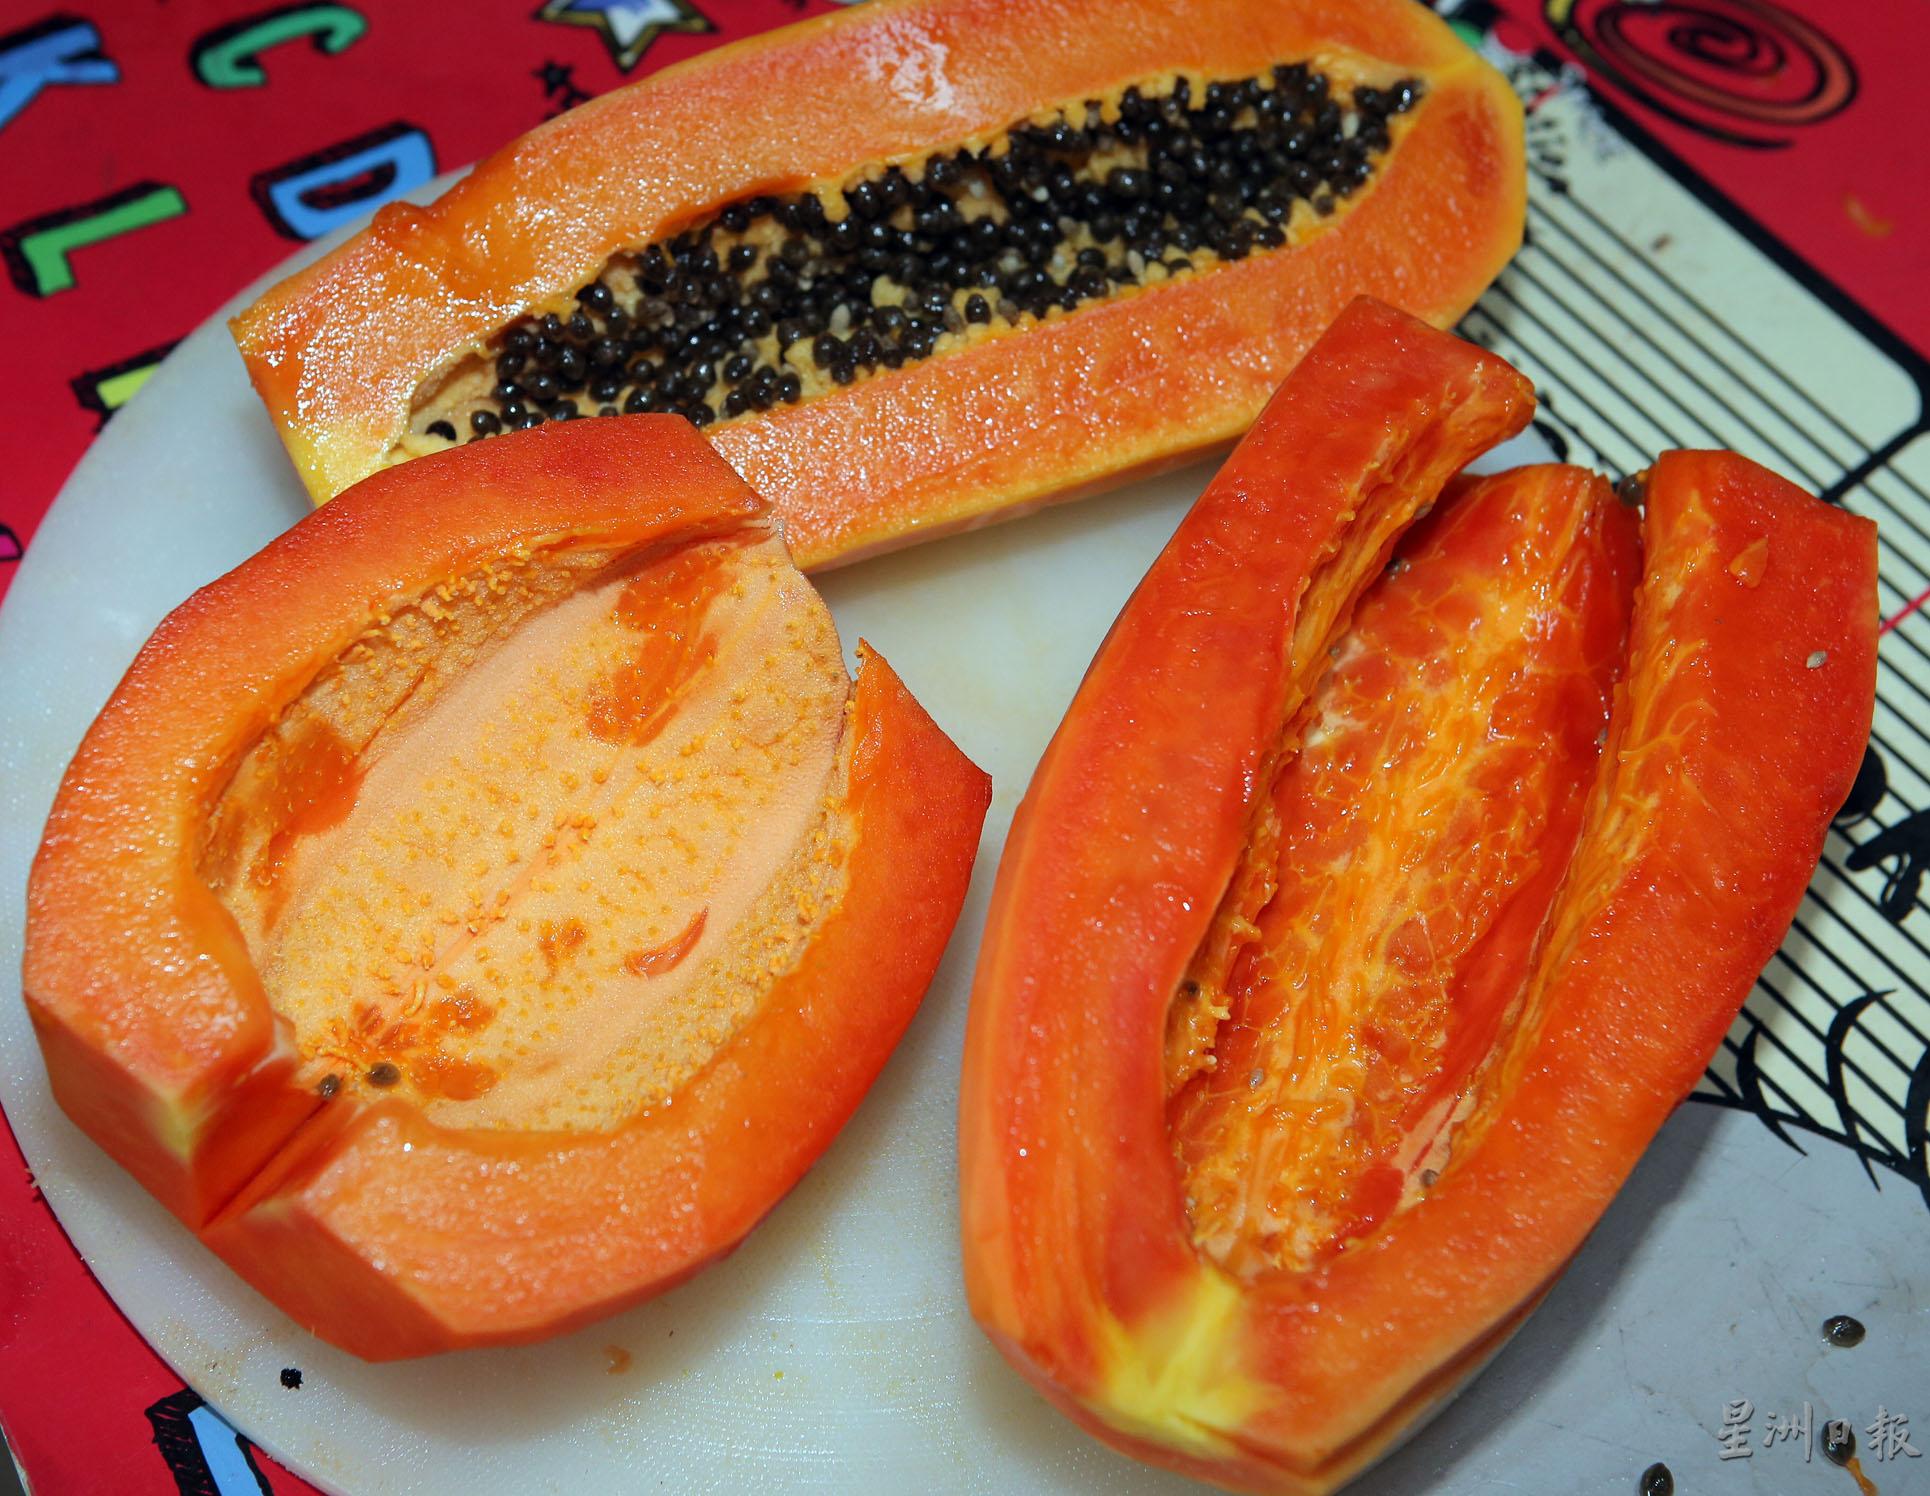 红妃木瓜的果肉比本地木瓜更为鲜艳，母株的果实（前左）没有经过授粉所以没有种子。前右为椭圆形的红妃木瓜，后为本地一尺瓜。

